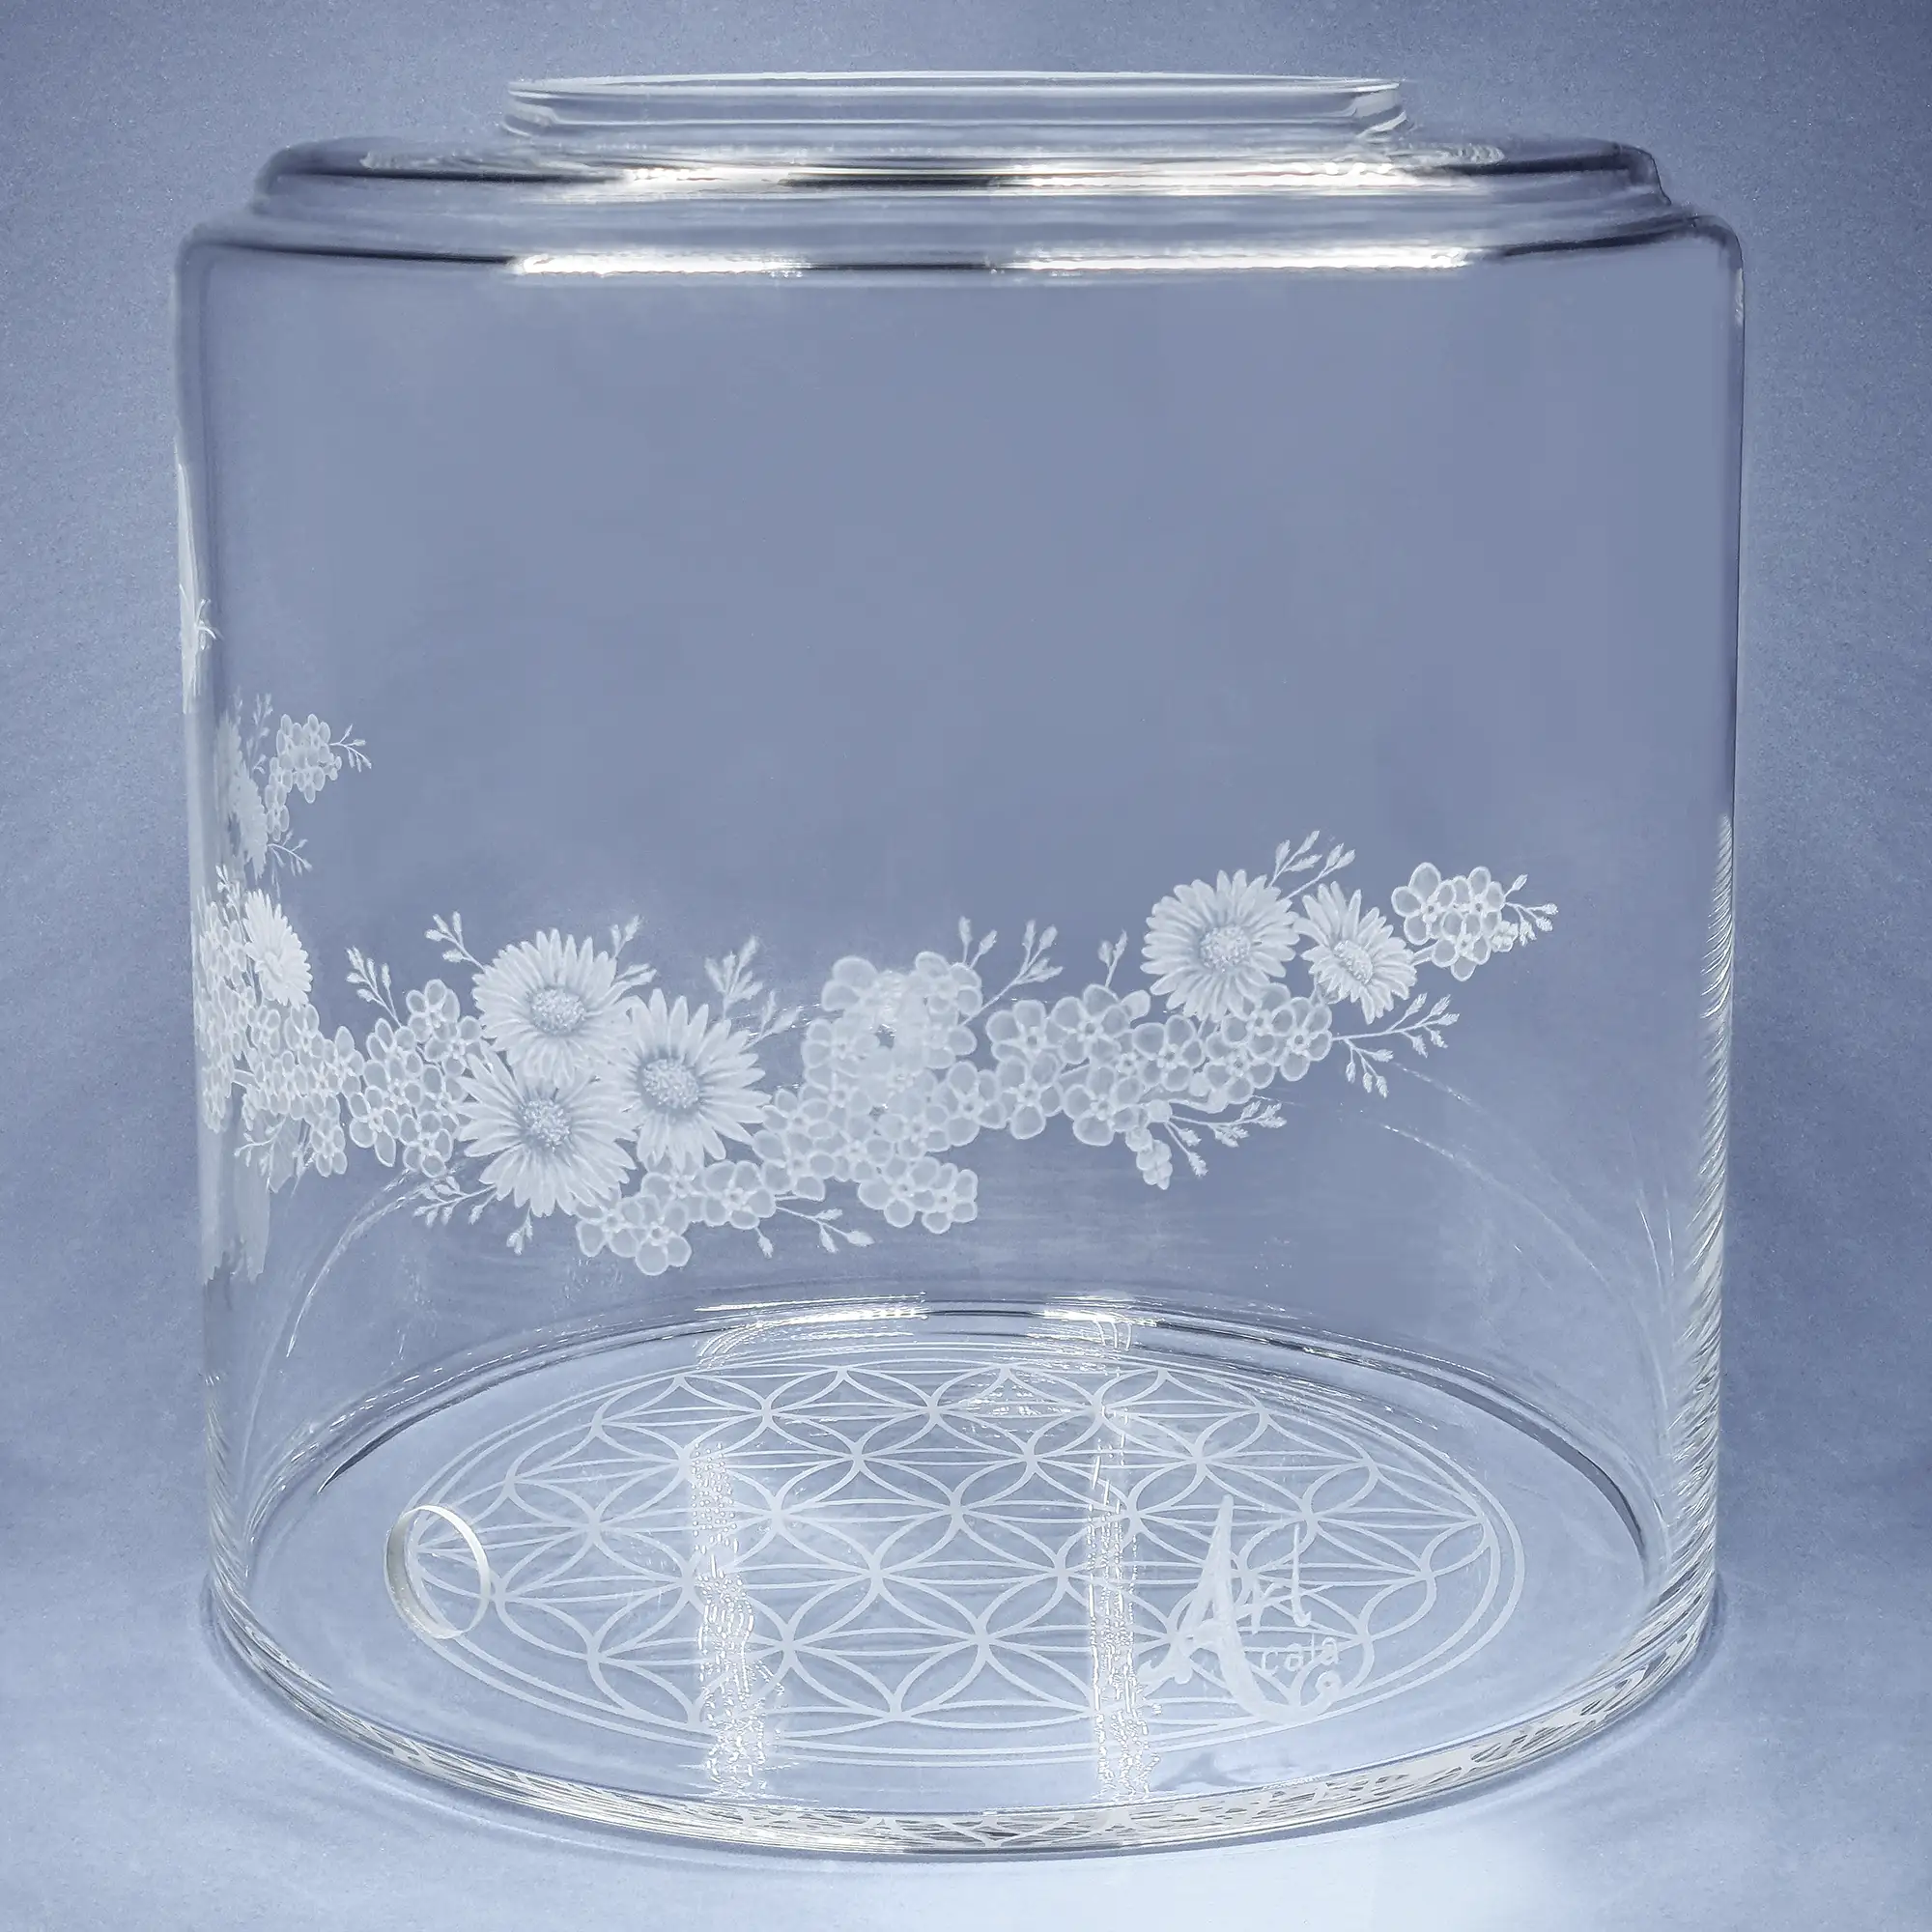 Vorratstank aus Glas für einen 8Liter Acala Wasserfilter in klarem Glas mit dem gravierten Kranz,umlaufende um das runde Glas.In dem Granz sind Vergissmeinnicht, Schmetterlinge und Gänseblümchen.Vorderansicht.